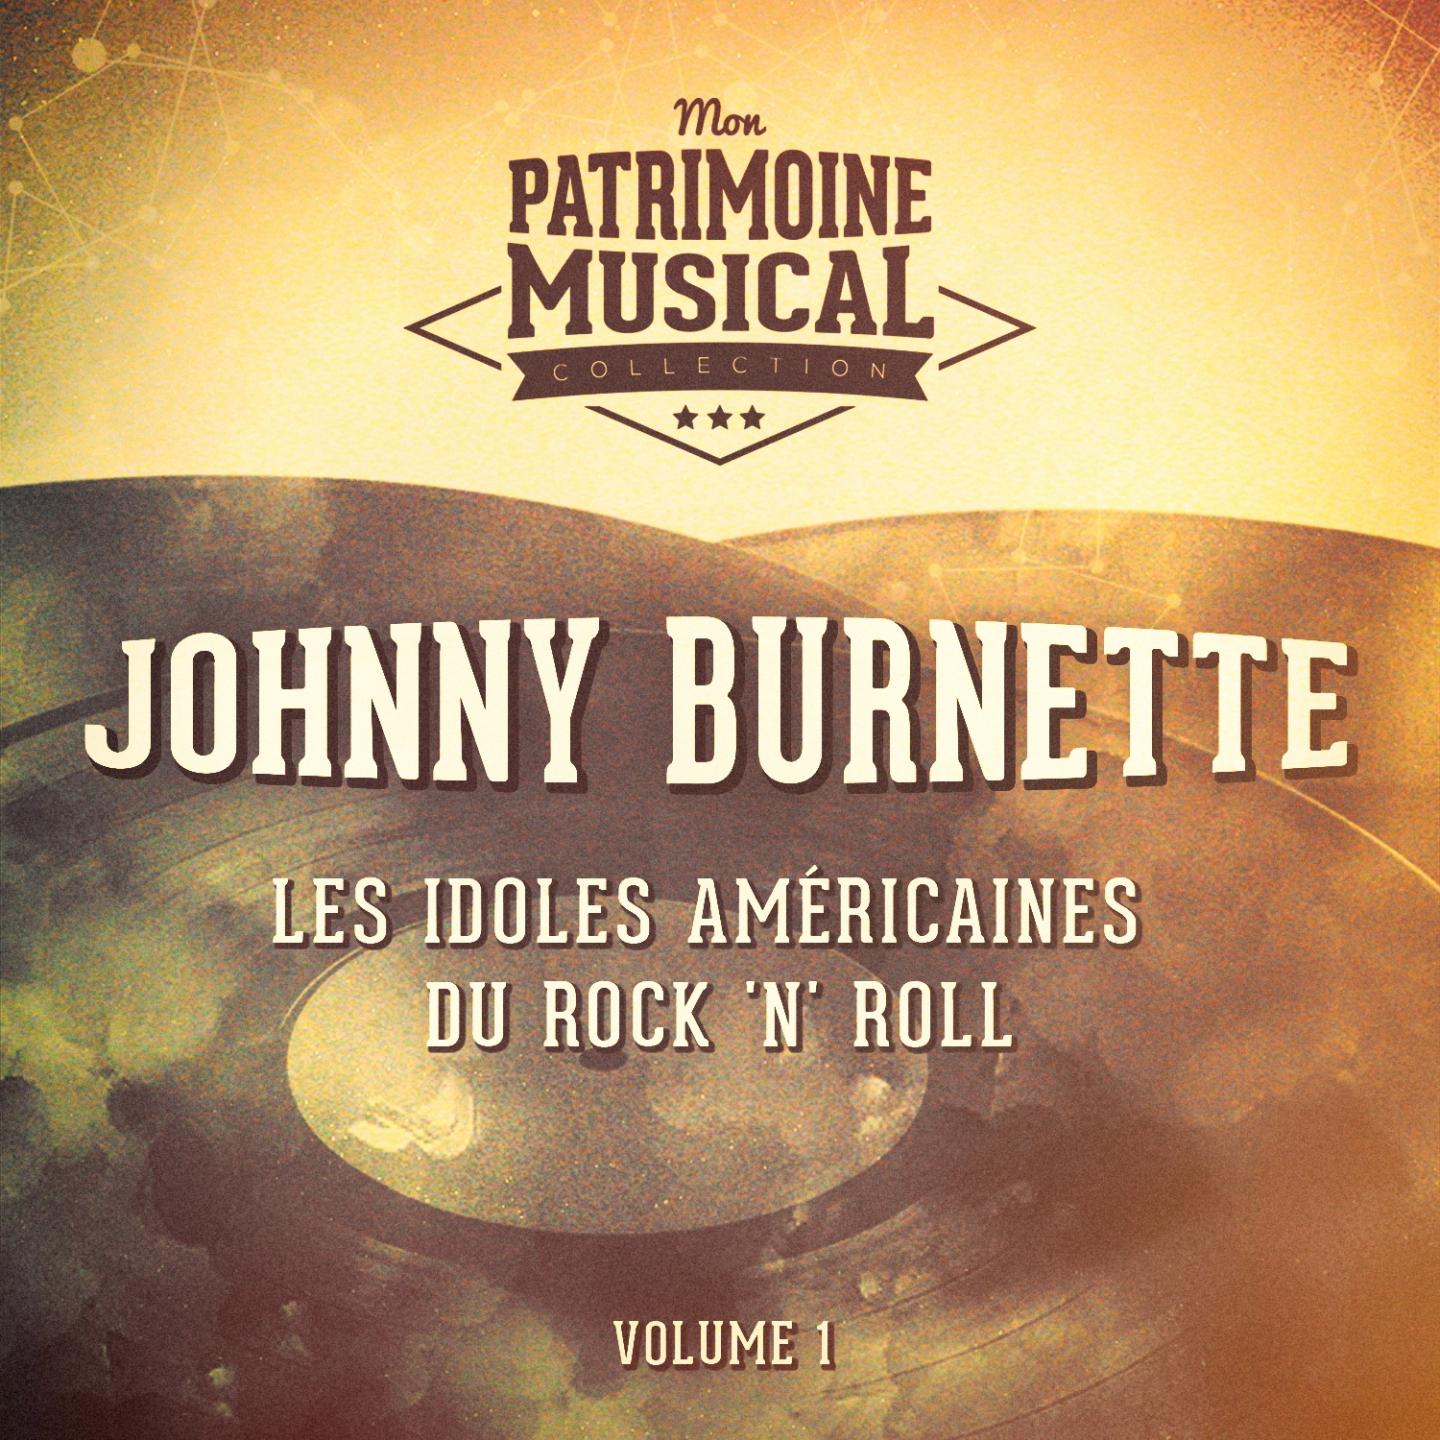 Les idoles américaines du rock 'n' roll : Johnny Burnette, Vol. 1